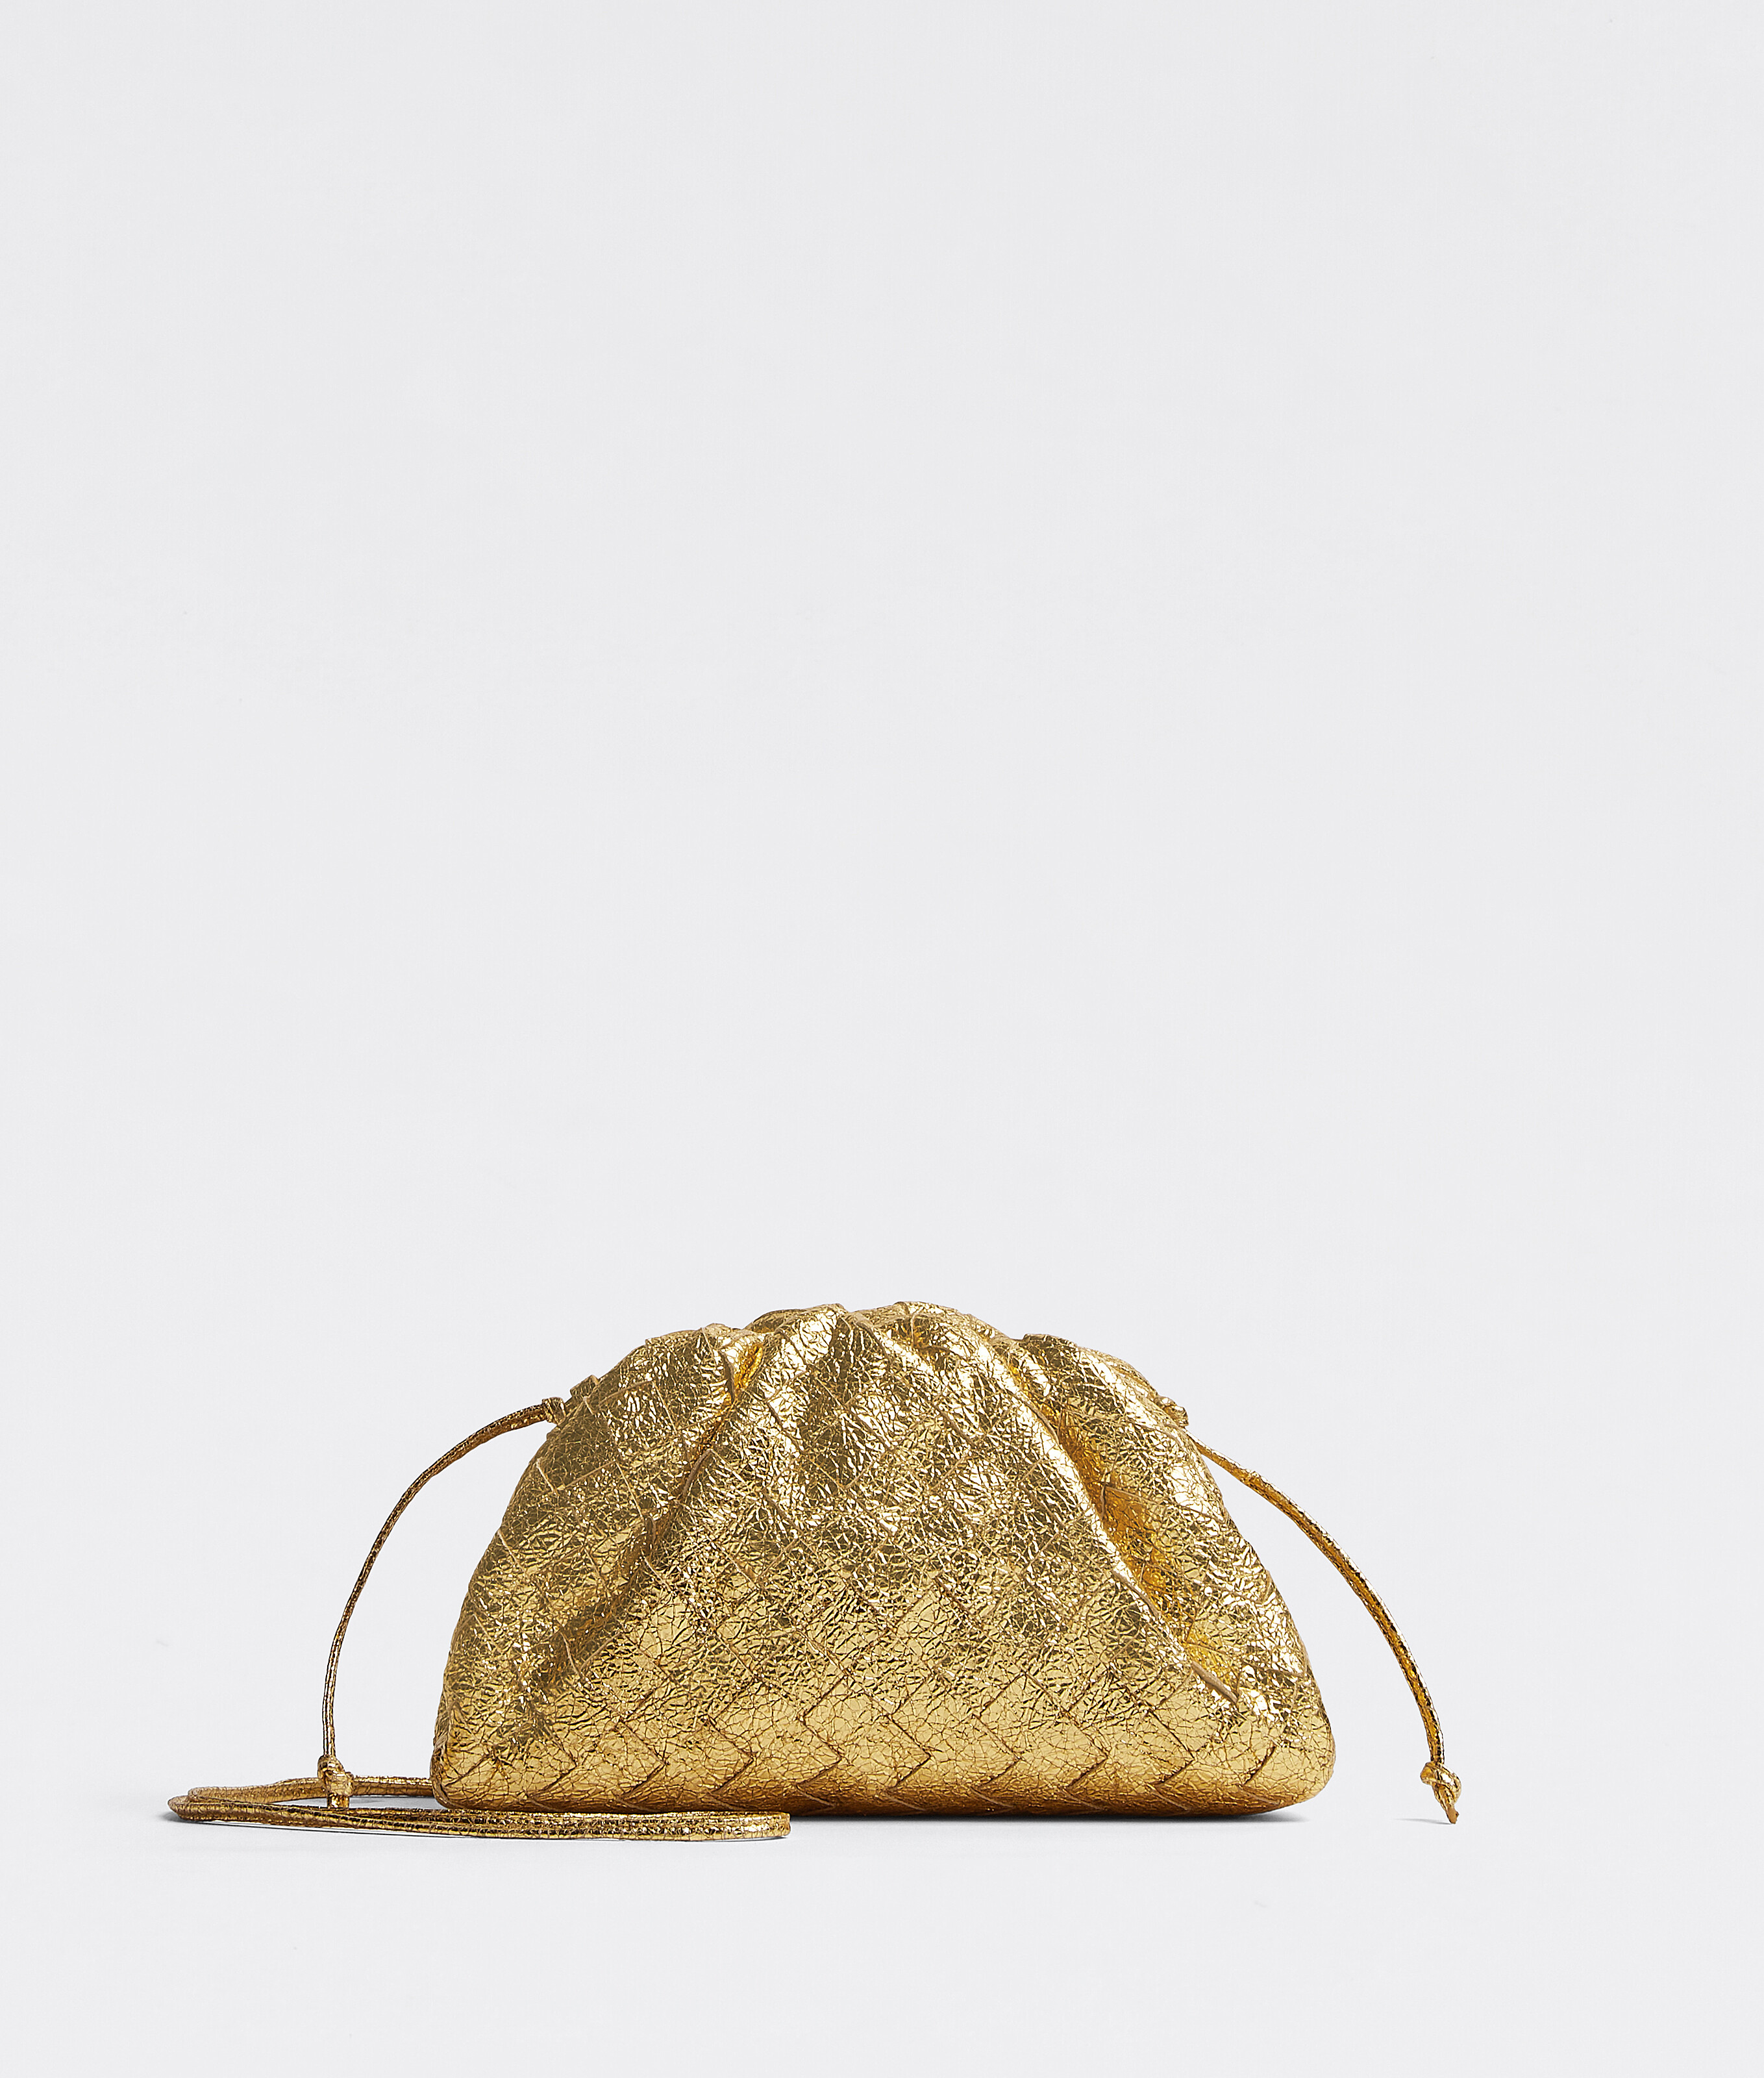 Bottega Veneta® Women's Mini Pouch in Gold. Shop online now.